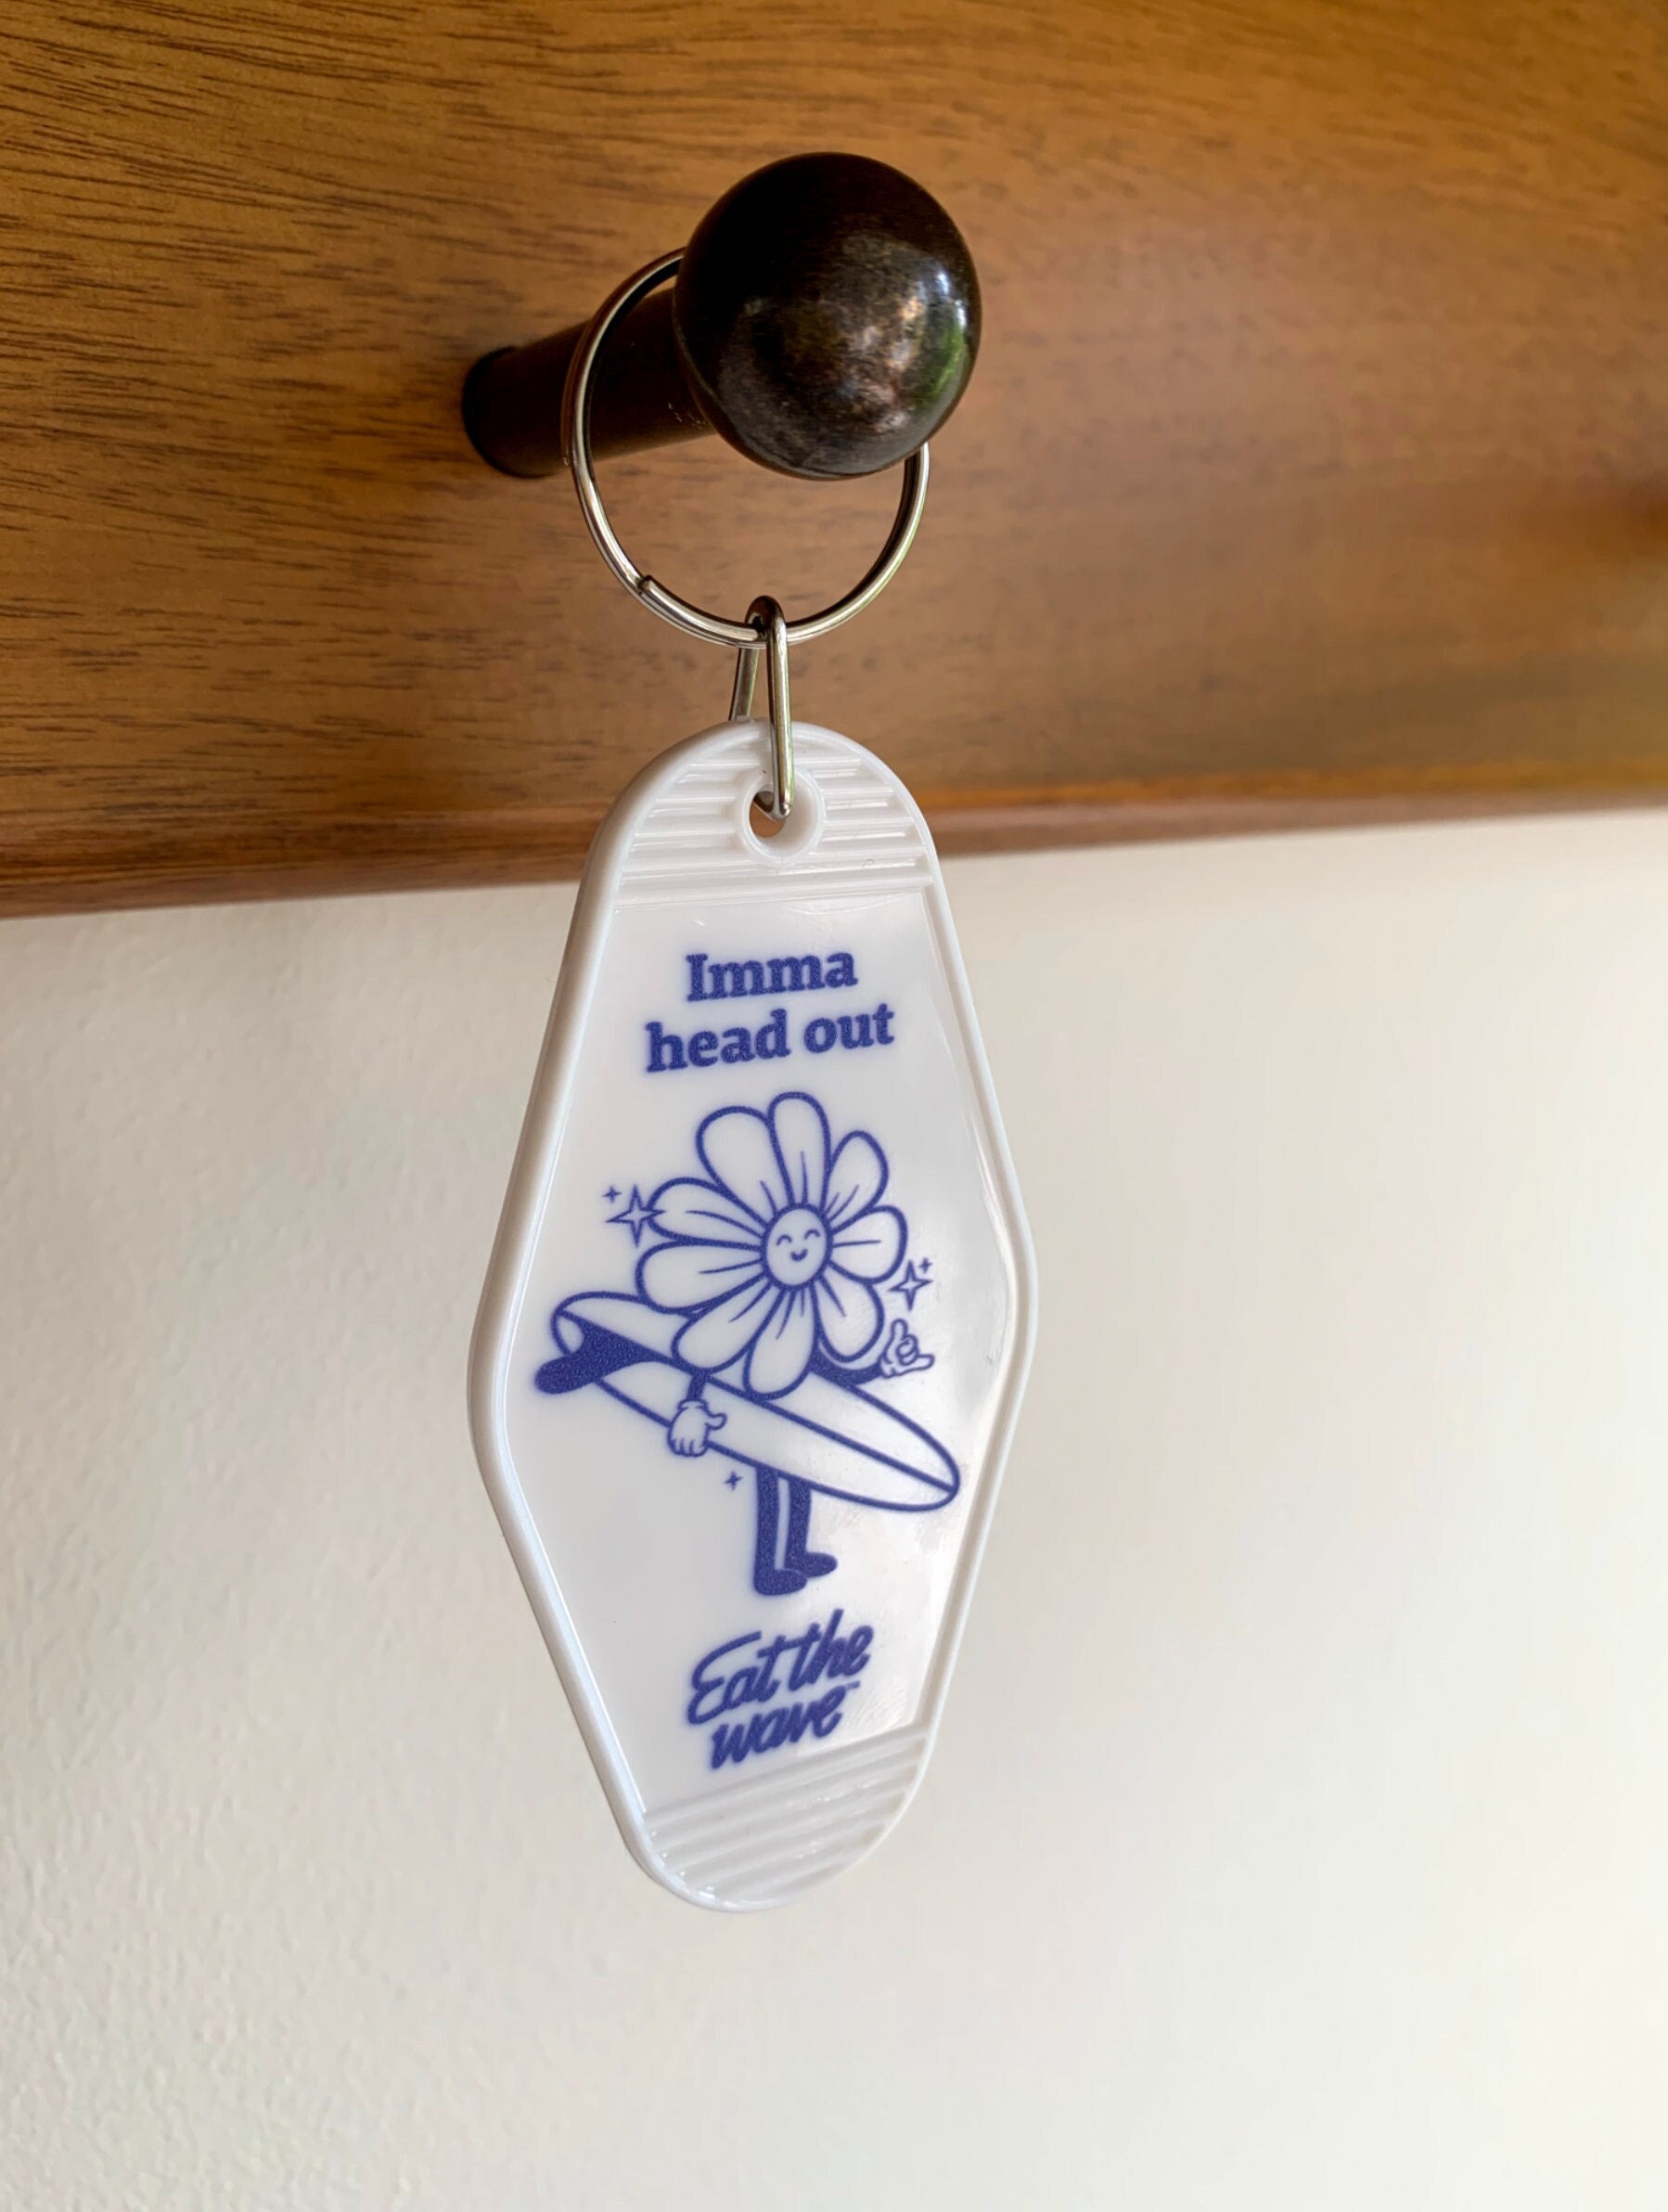 Blank Motel Keychain / Retro Hotel Key Tag / Vintage Motel Keychain /  Keychain Blank for Crafts / Gold Hardware / Bulk Keychains / Plastic